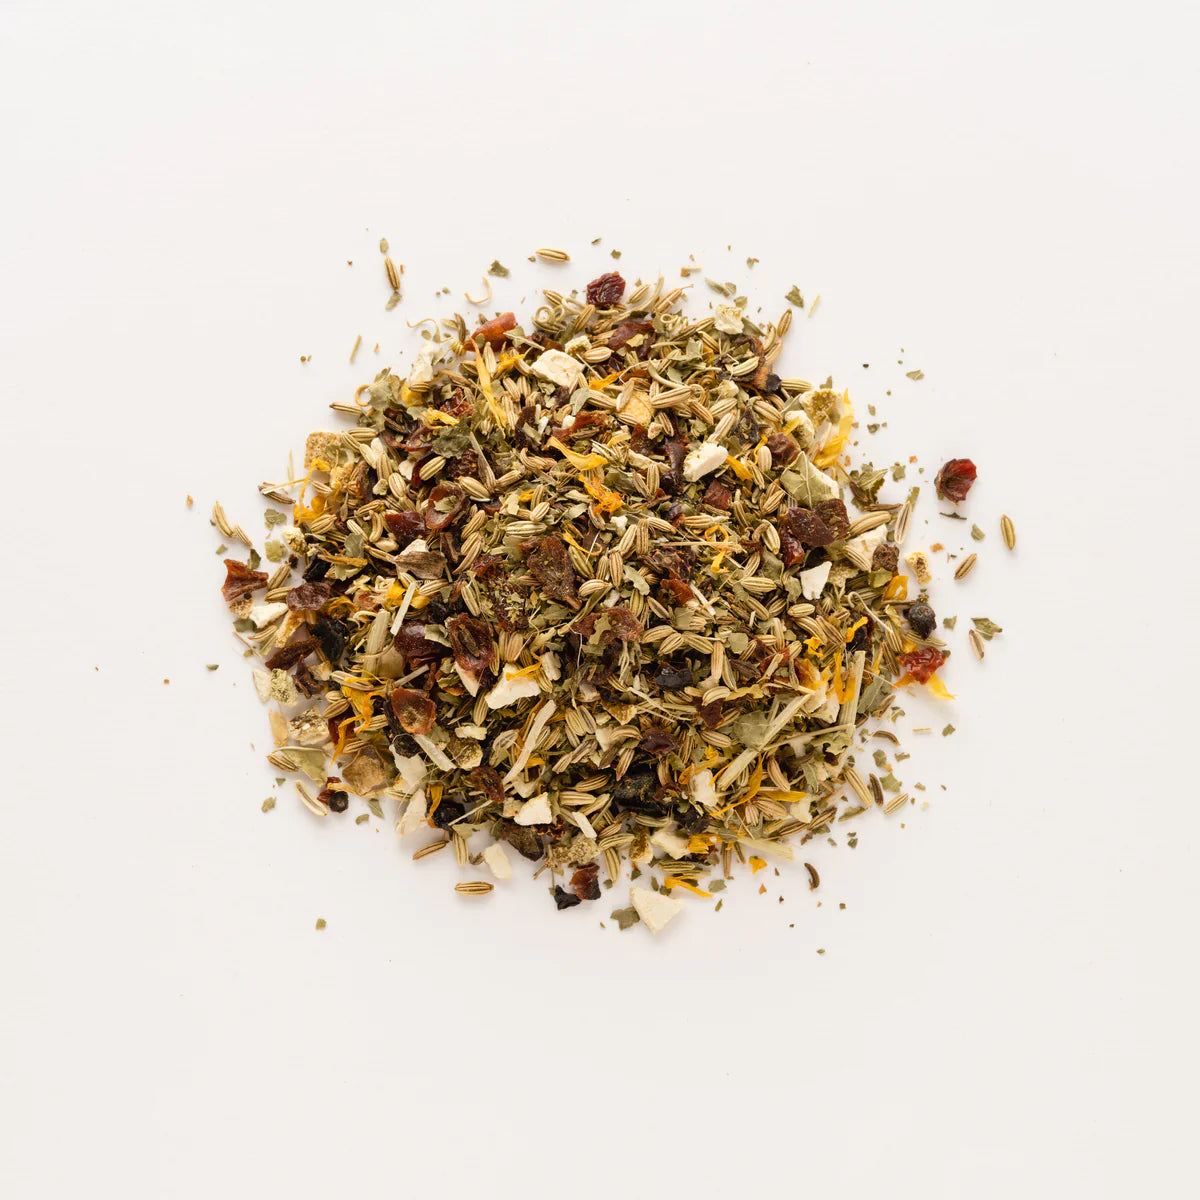 Wilder Botanics Inner Beauty Herbal Tea - Radical Giving